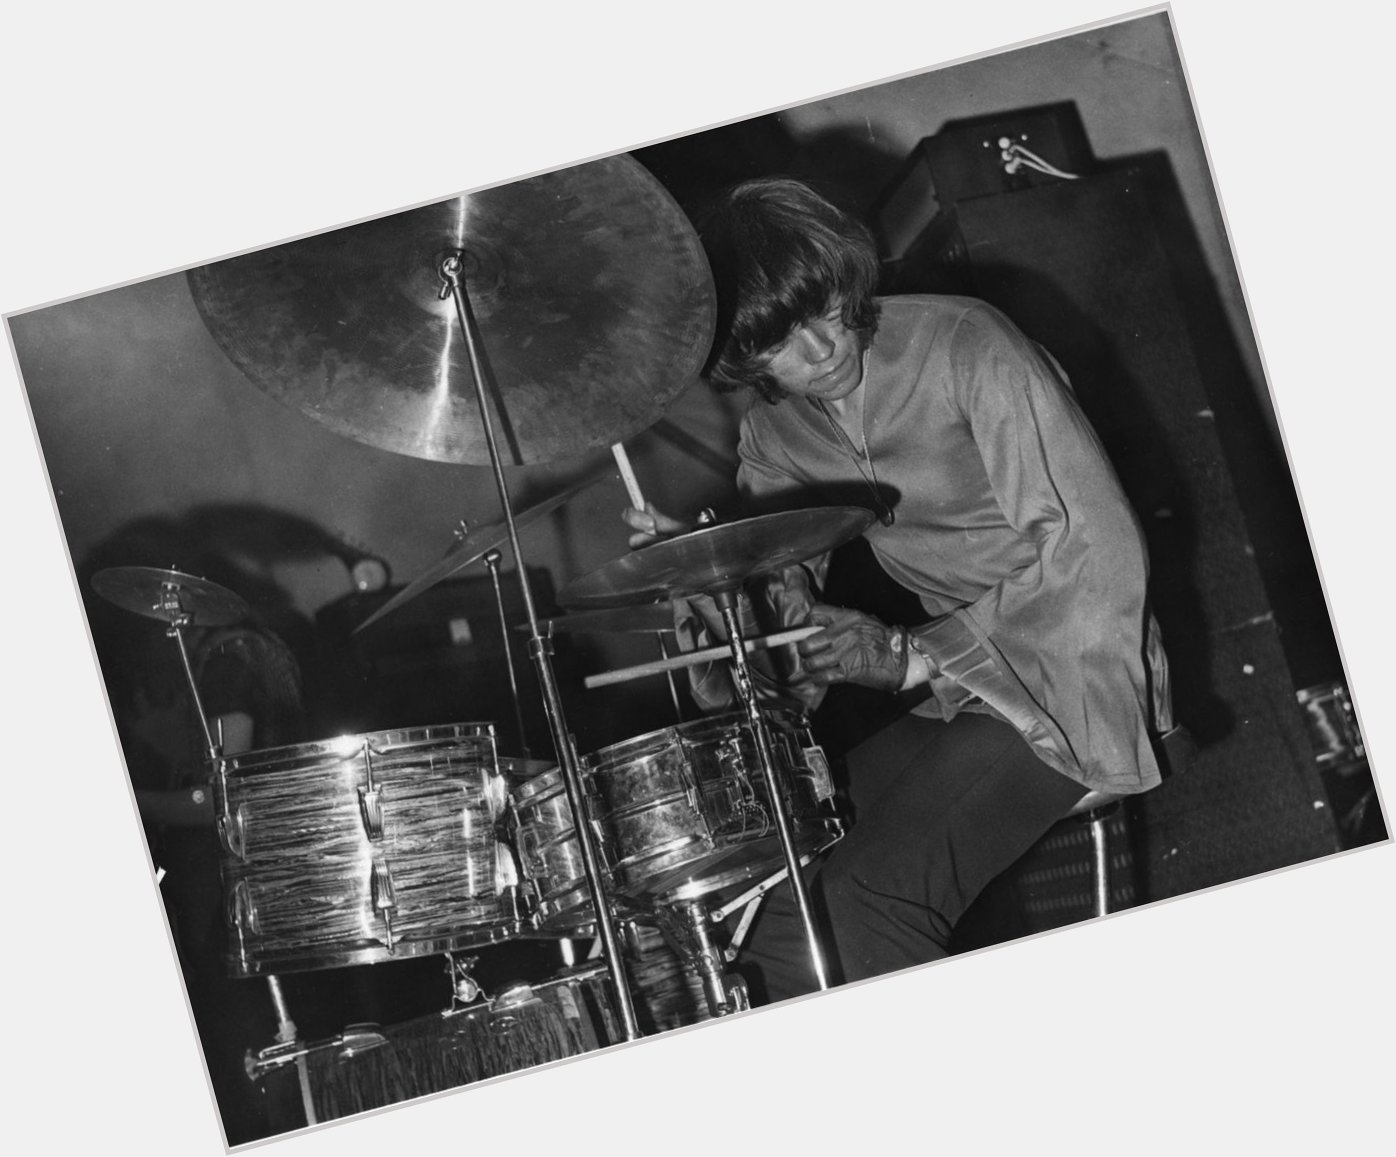 Happy 70th Birthday Bev Bevan, drummer extraordinaire for The Move & ELO, born Nov 23, 1944   